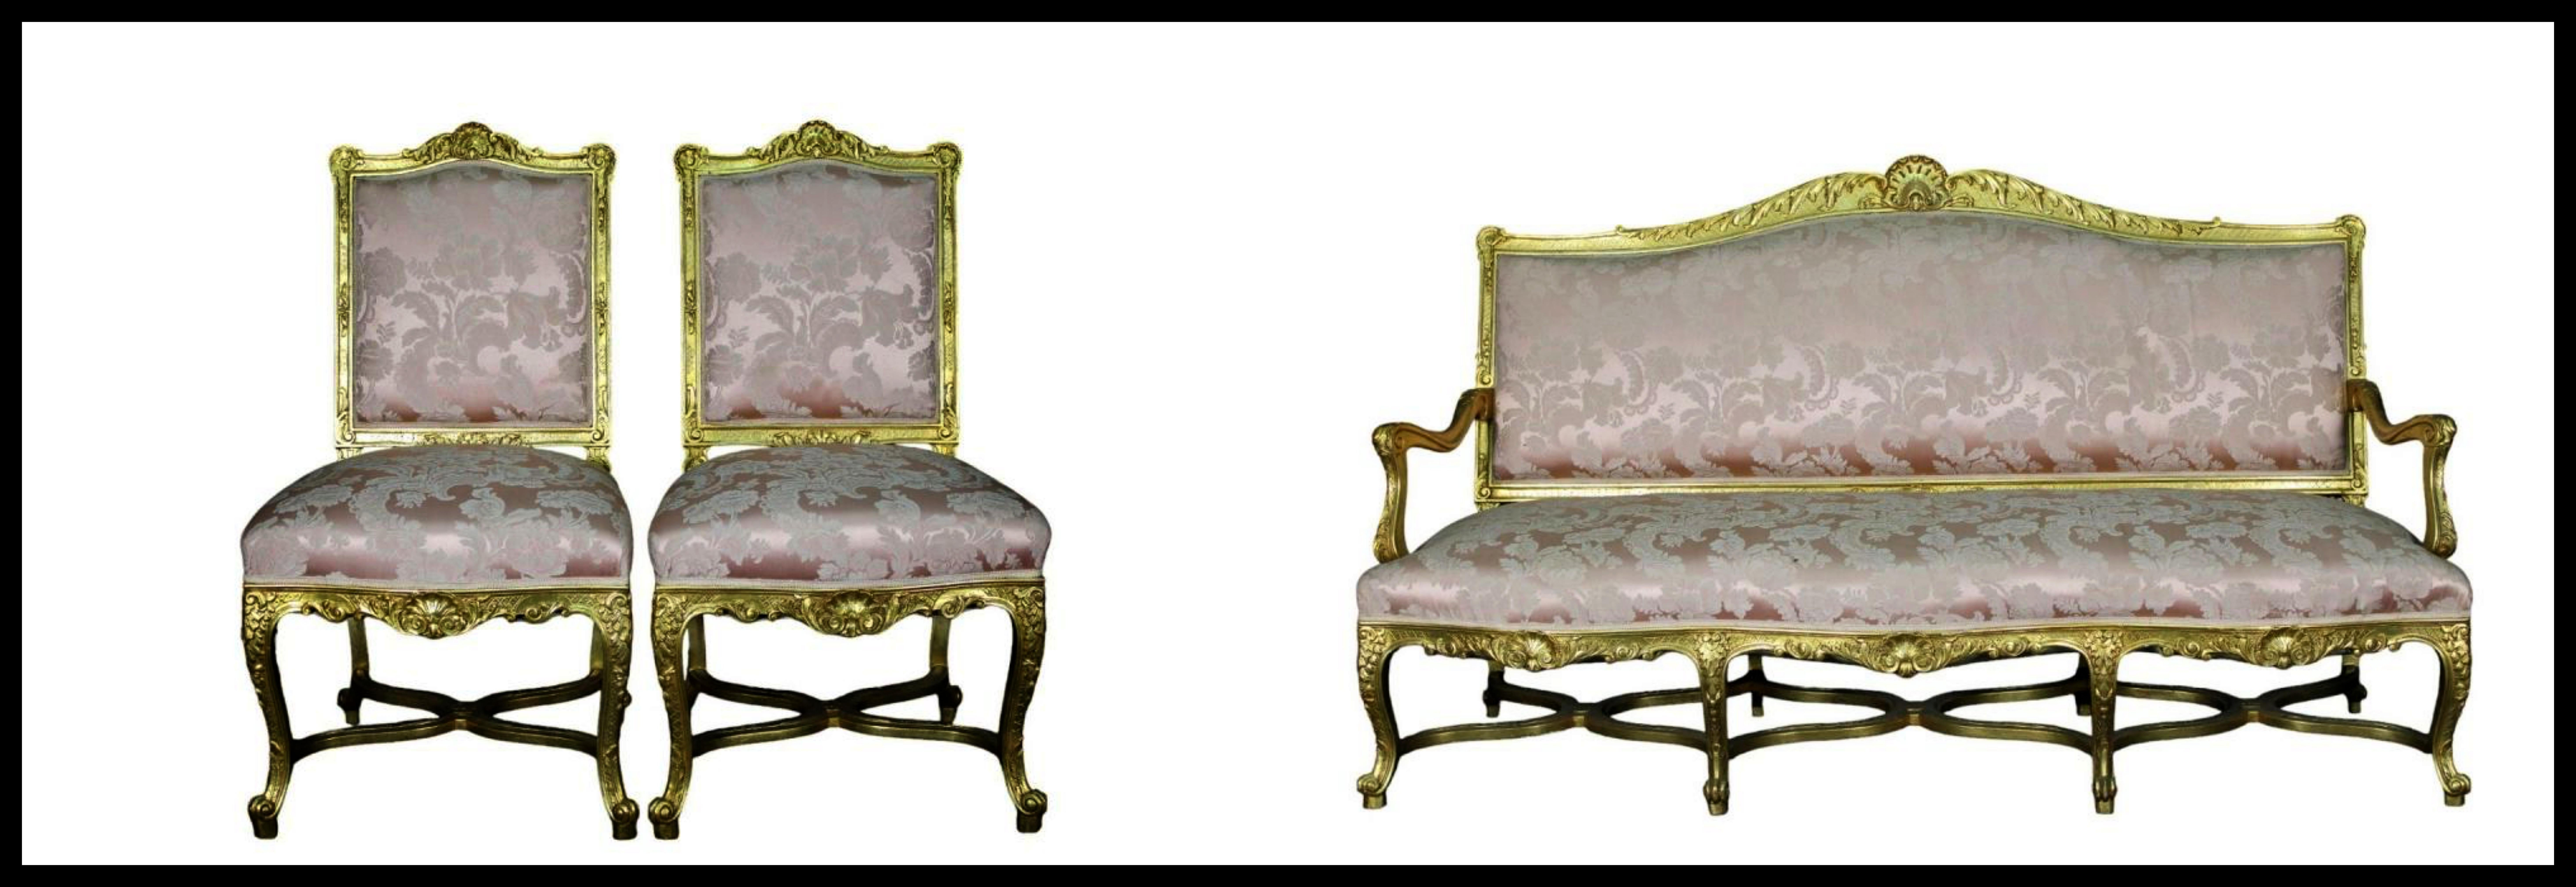 Canapé et deux chaises français du 19e siècle

SOFA
en bois richement marqueté et doré, de fabrication française
  h 114 x 190 x 65 cm

DEUX CHAISES
en bois richement marqueté et doré, de fabrication française
h 97 x 56 x 47 cm

bon état, original